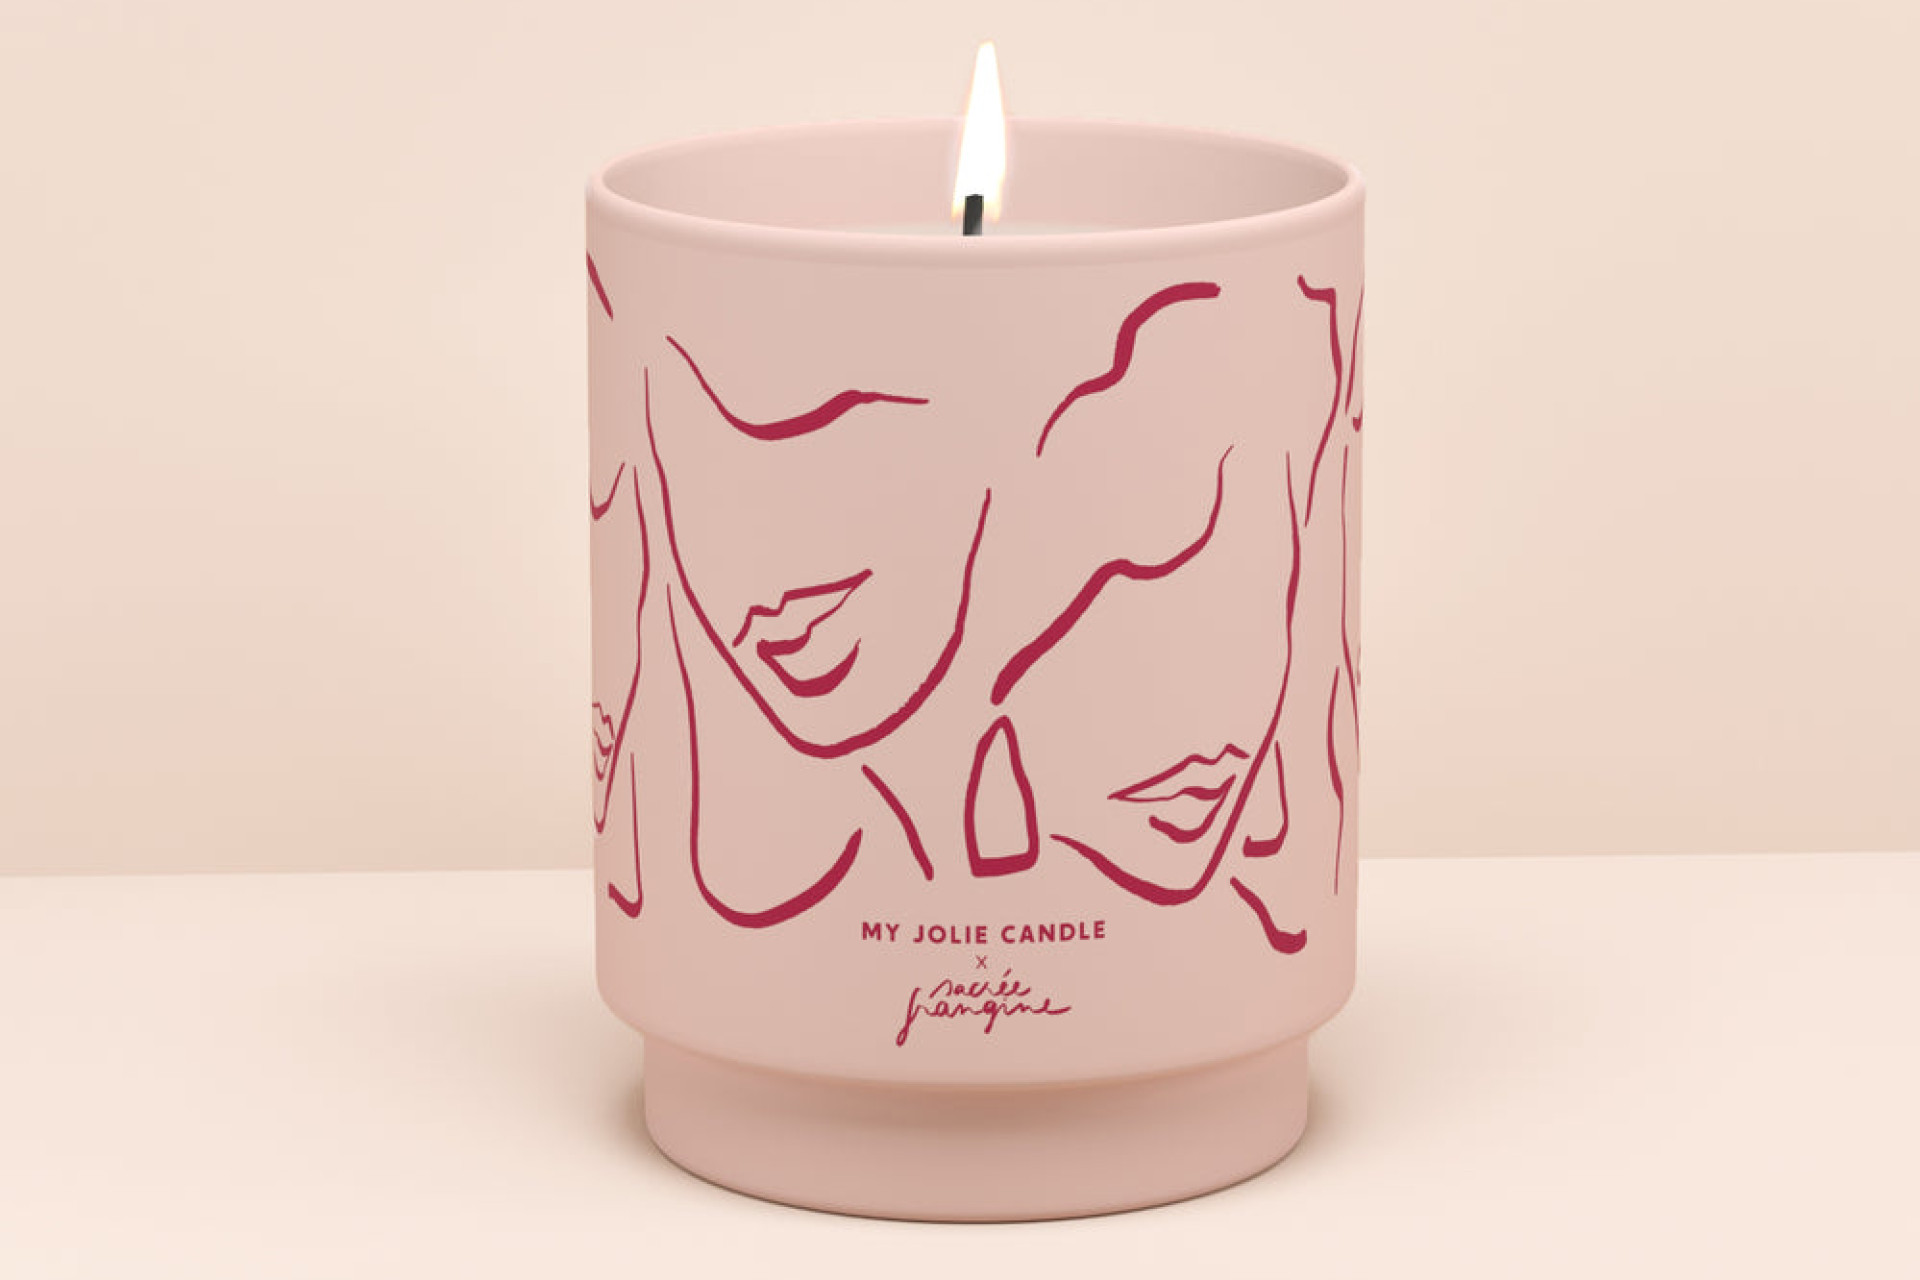 Bougie "Sacrée Frangine" de la marque My Jolie Candle à l'occasion d'Octobre Rose